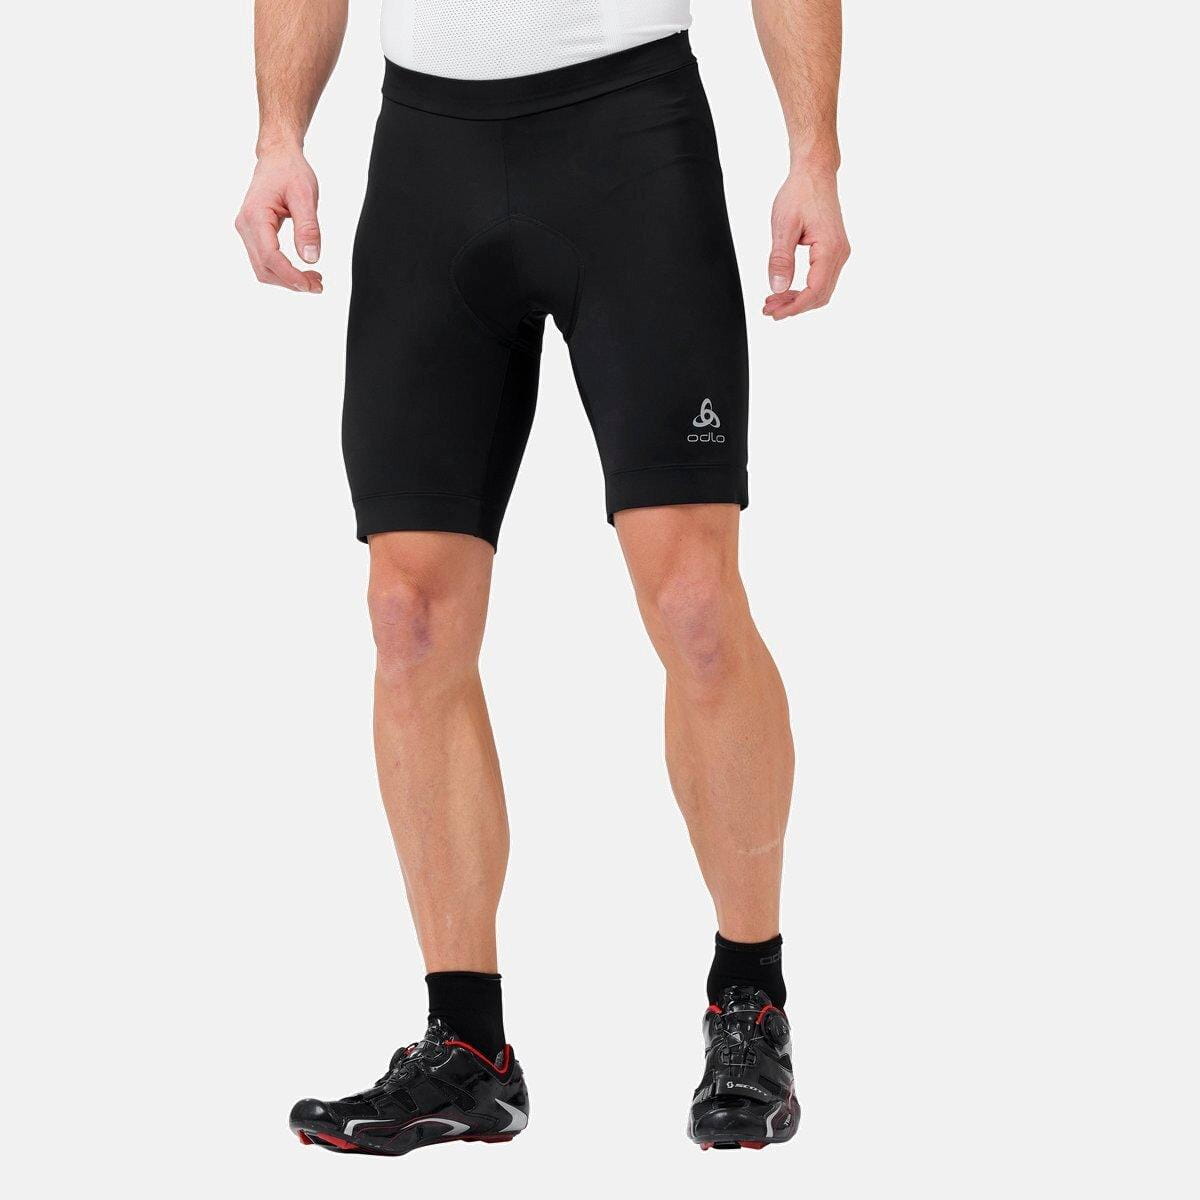 Shorts für Männer Odlo Tights Short Essential